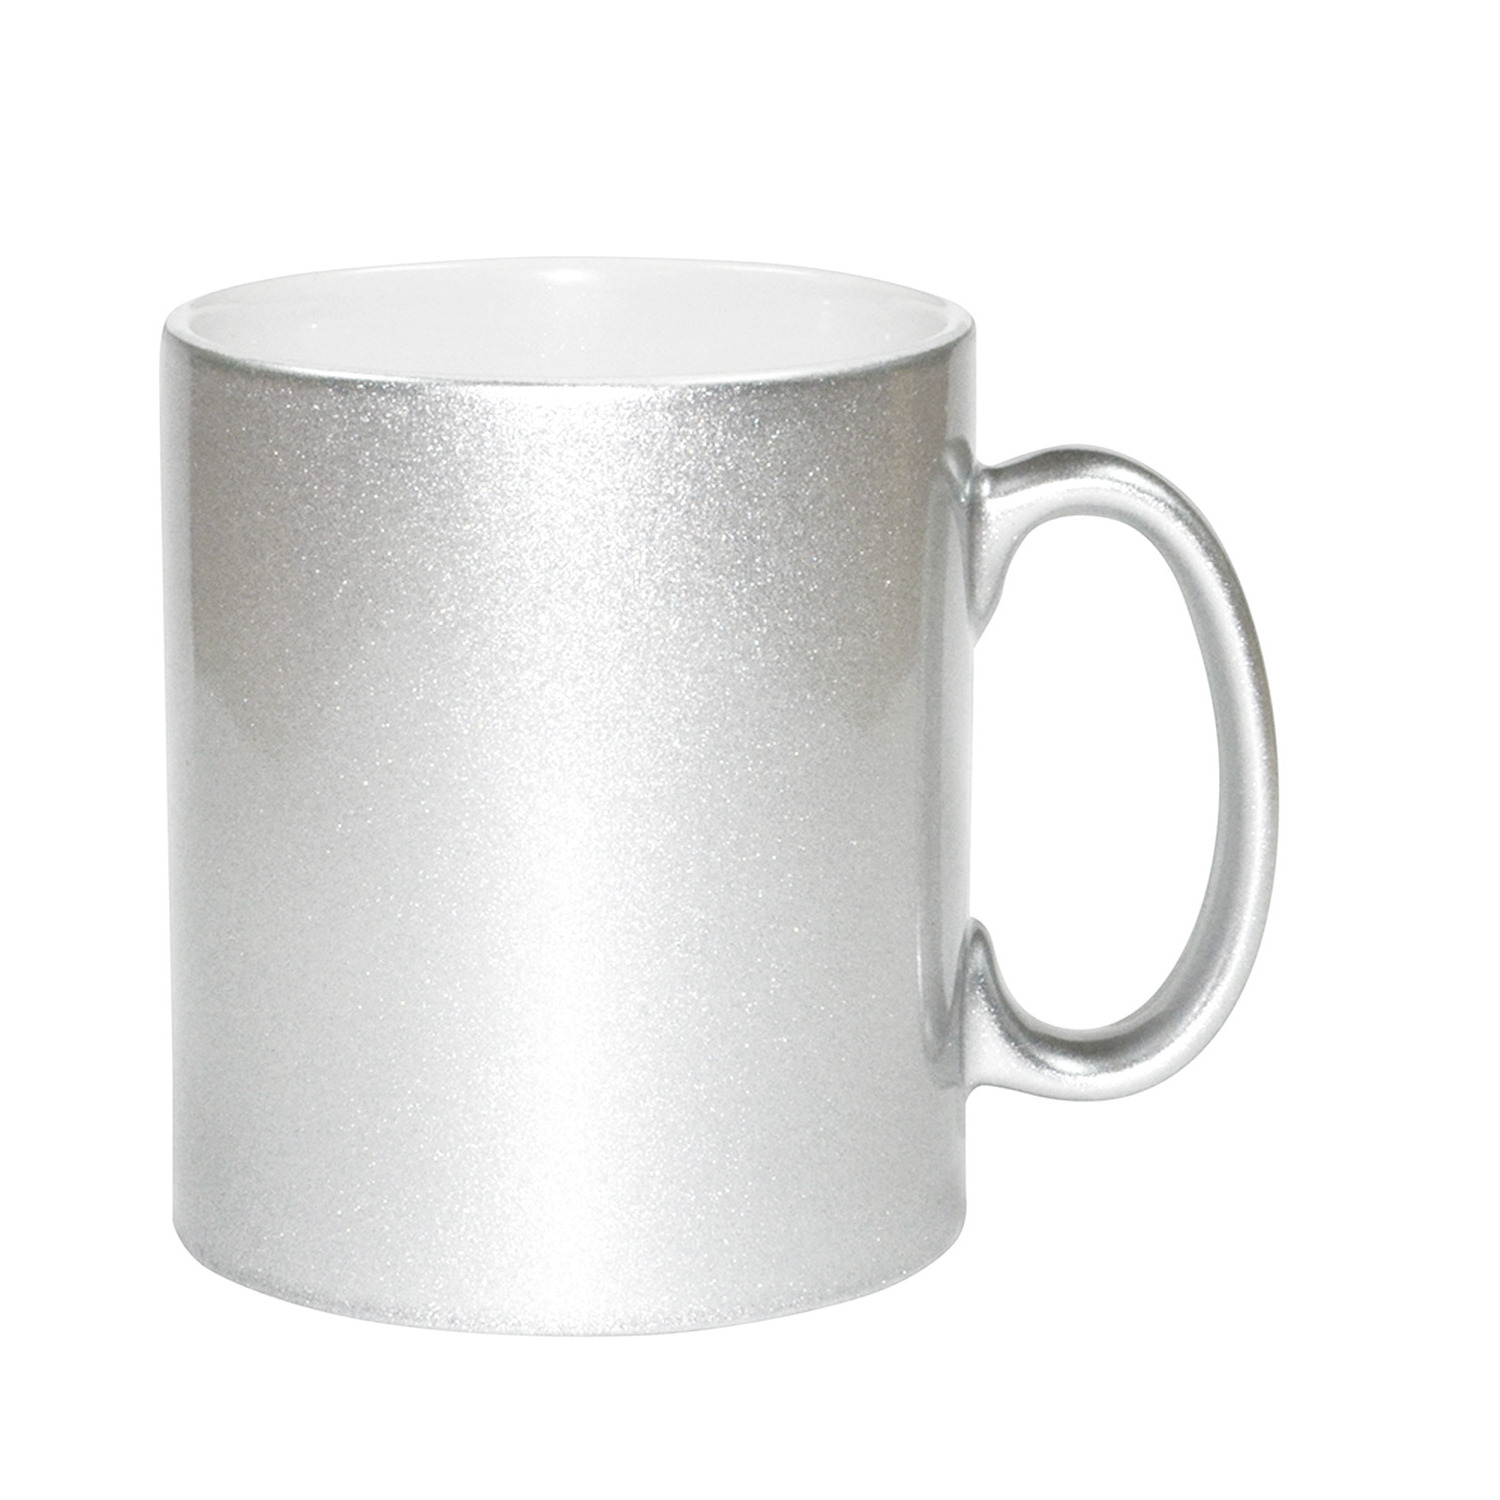 1x stuks zilveren bekers- koffiemokken 330 ml